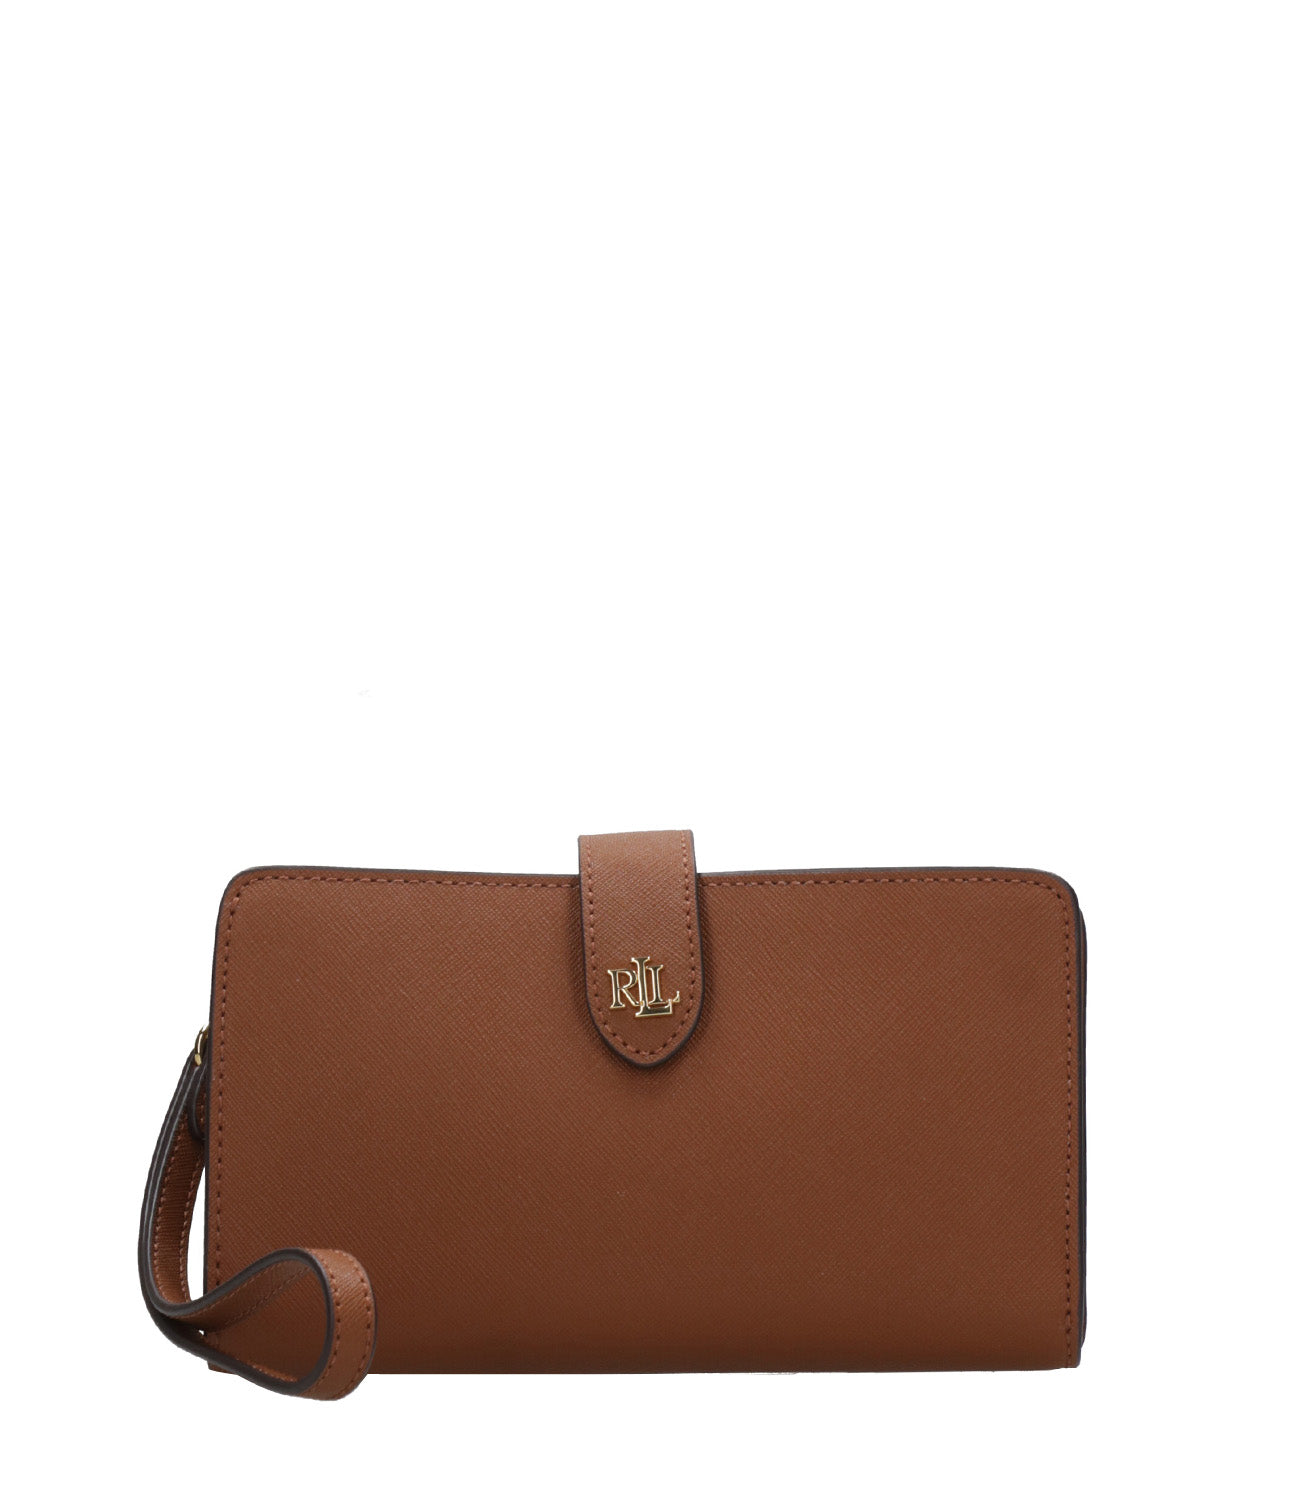 Lauren Ralph Lauren | Leather Clutch Bag